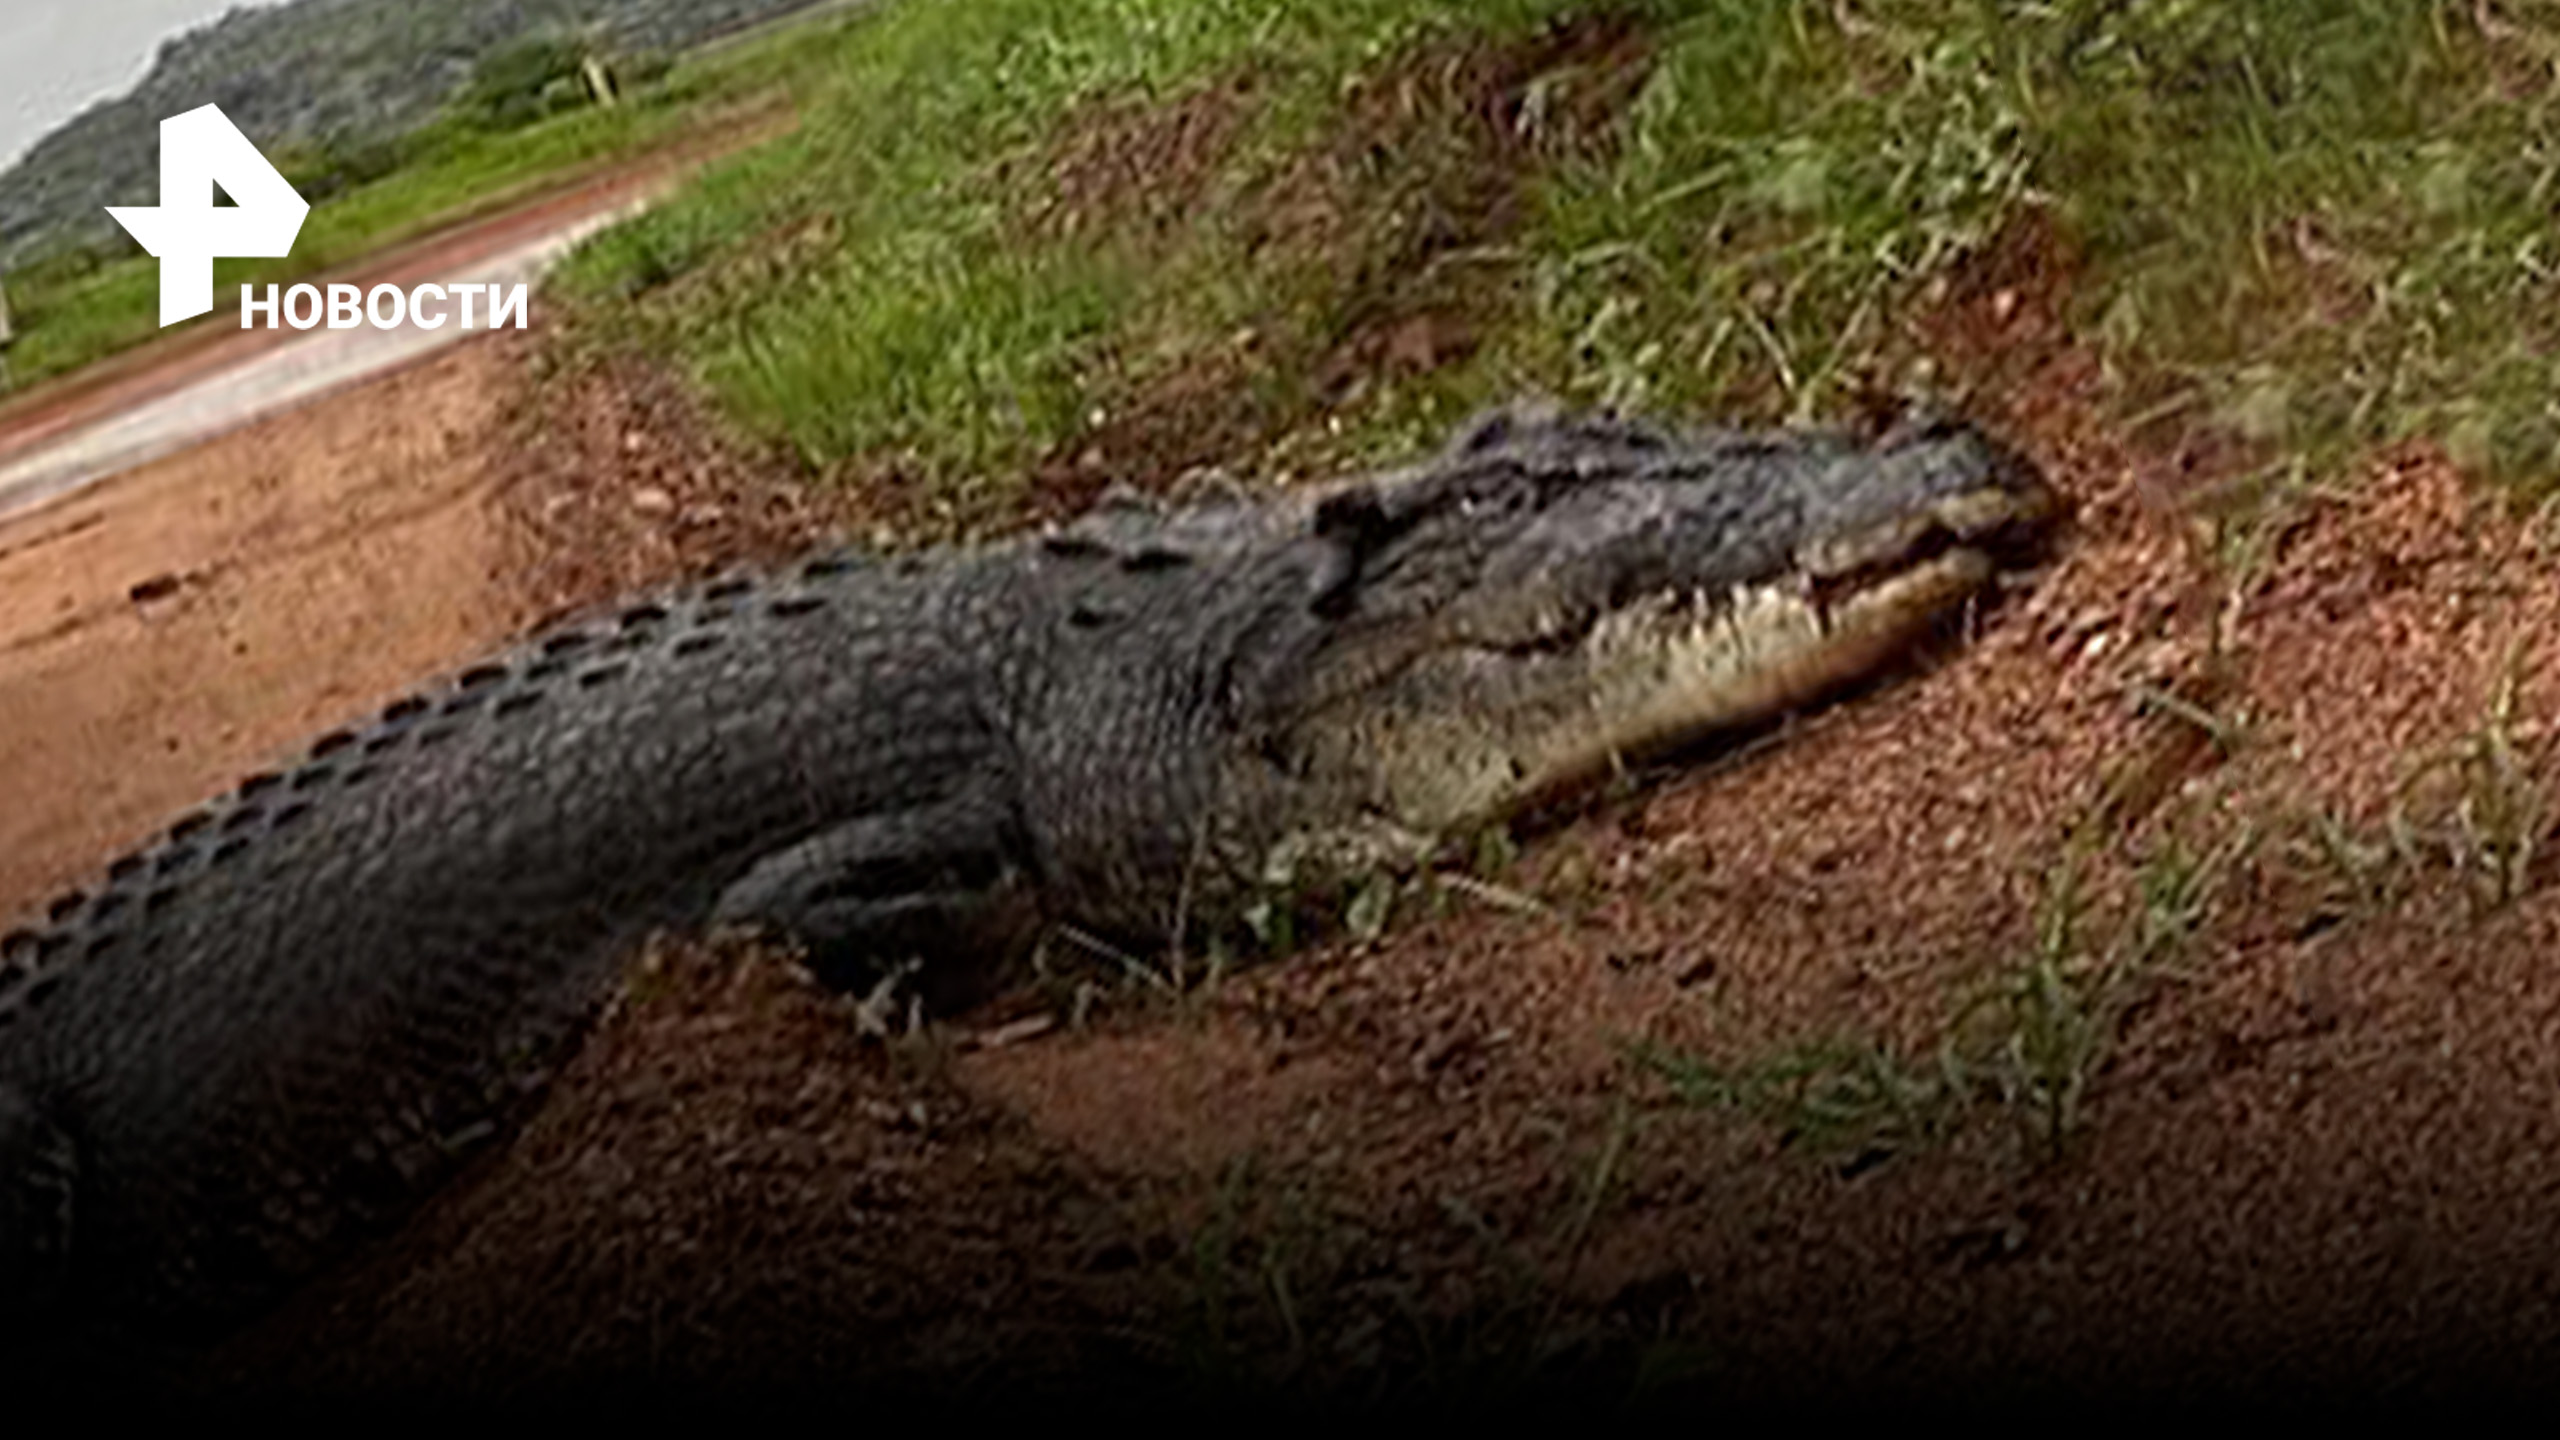 Крокодил набросился на туриста в Австралии: тот успел унести ноги / РЕН Новости